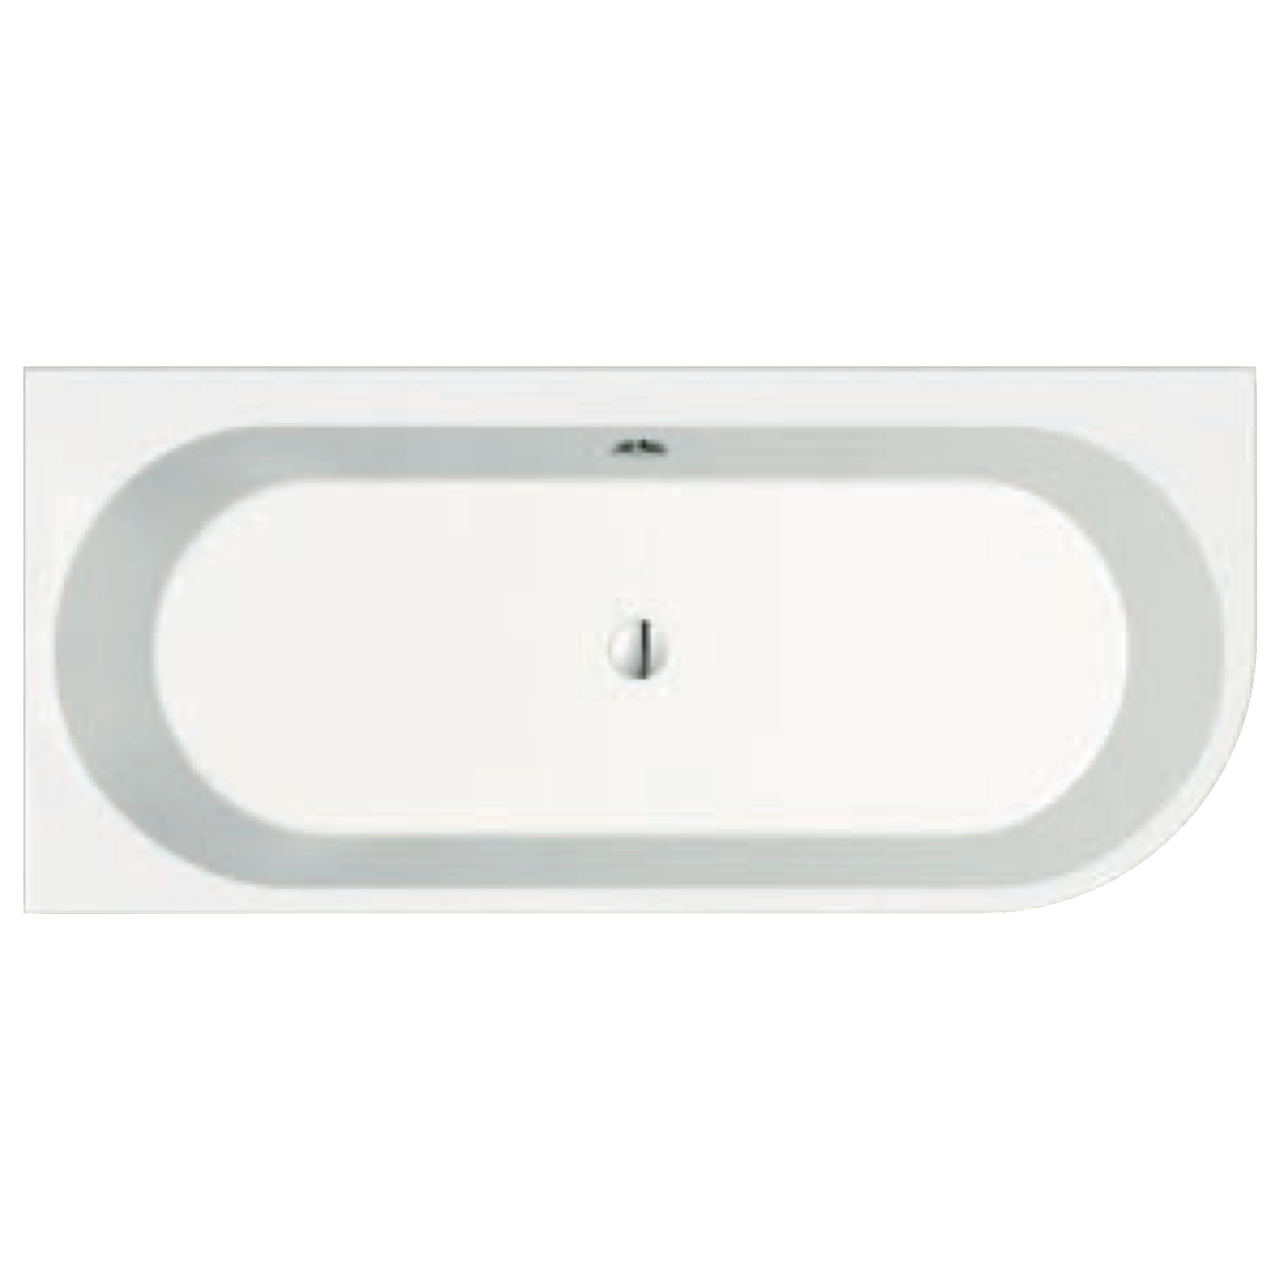 repaBAD Badewanne „Livorno Oval“ freistehend oval 165 × 75 cm, Mittelablauf in Weiß